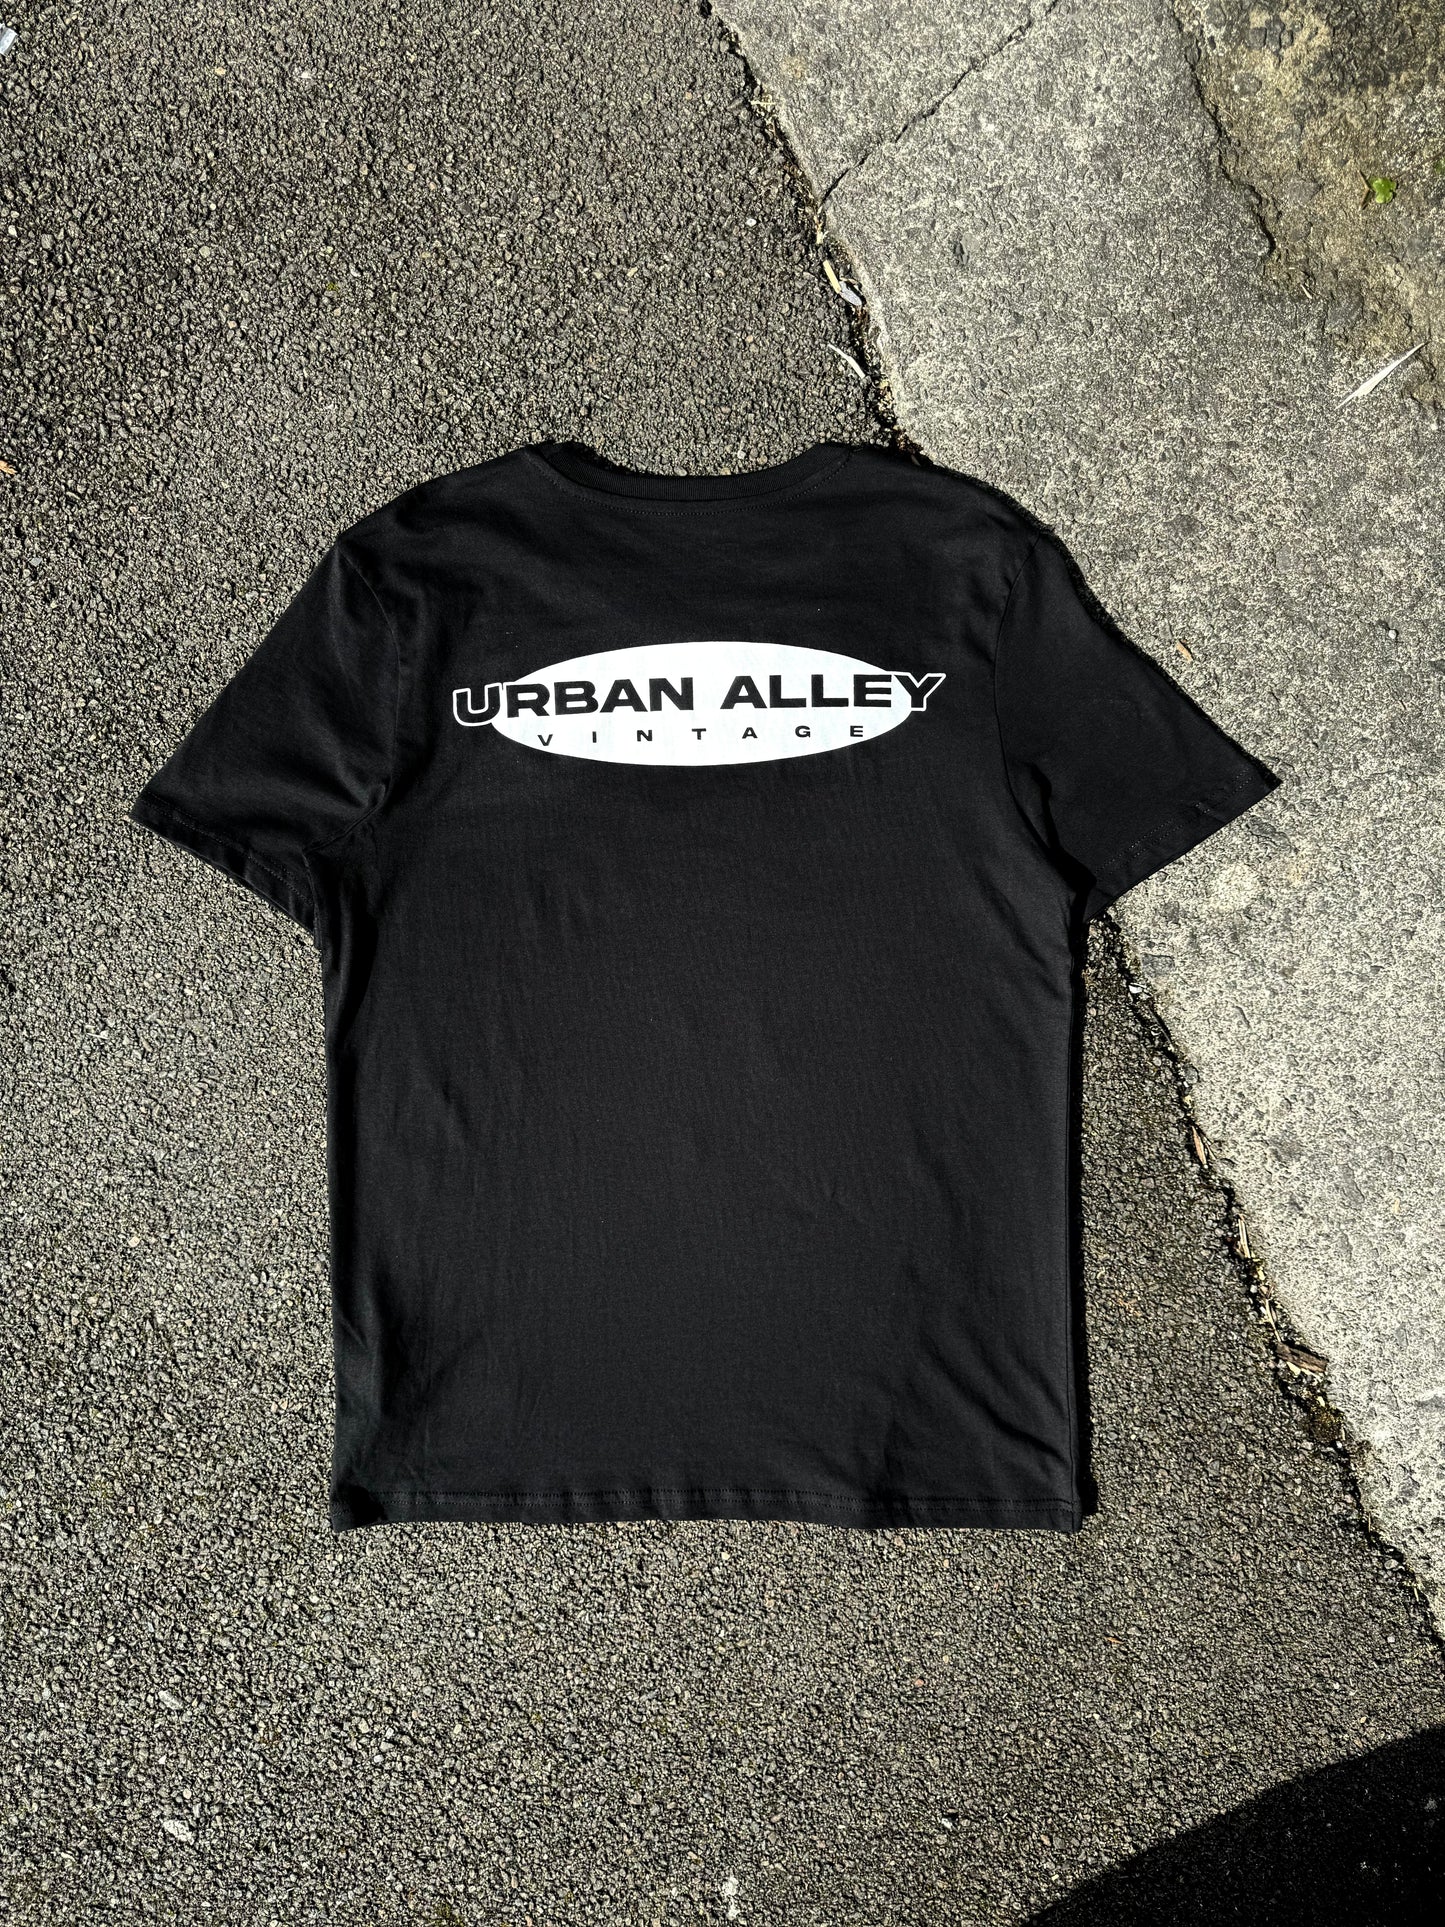 Black Urban Alley Vintage Static TV Tshirt